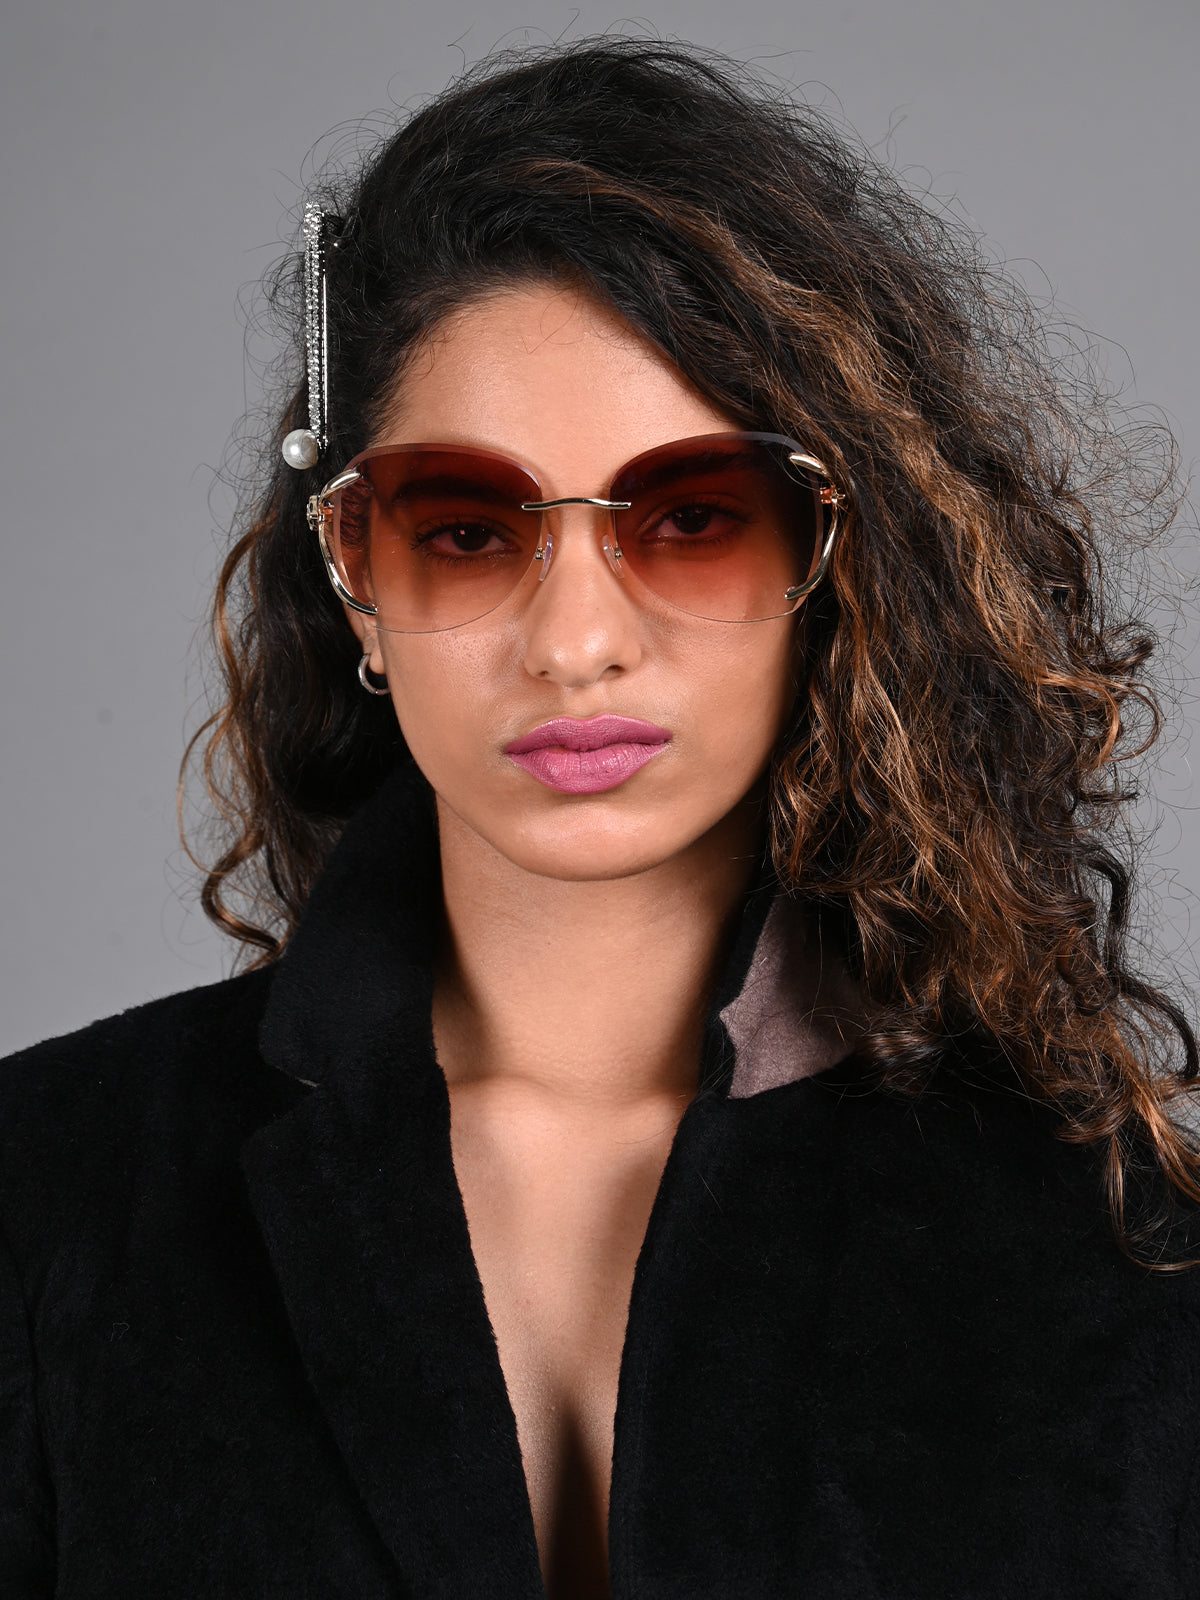 Odette Tan Acrylic Square Sunglasses for Women